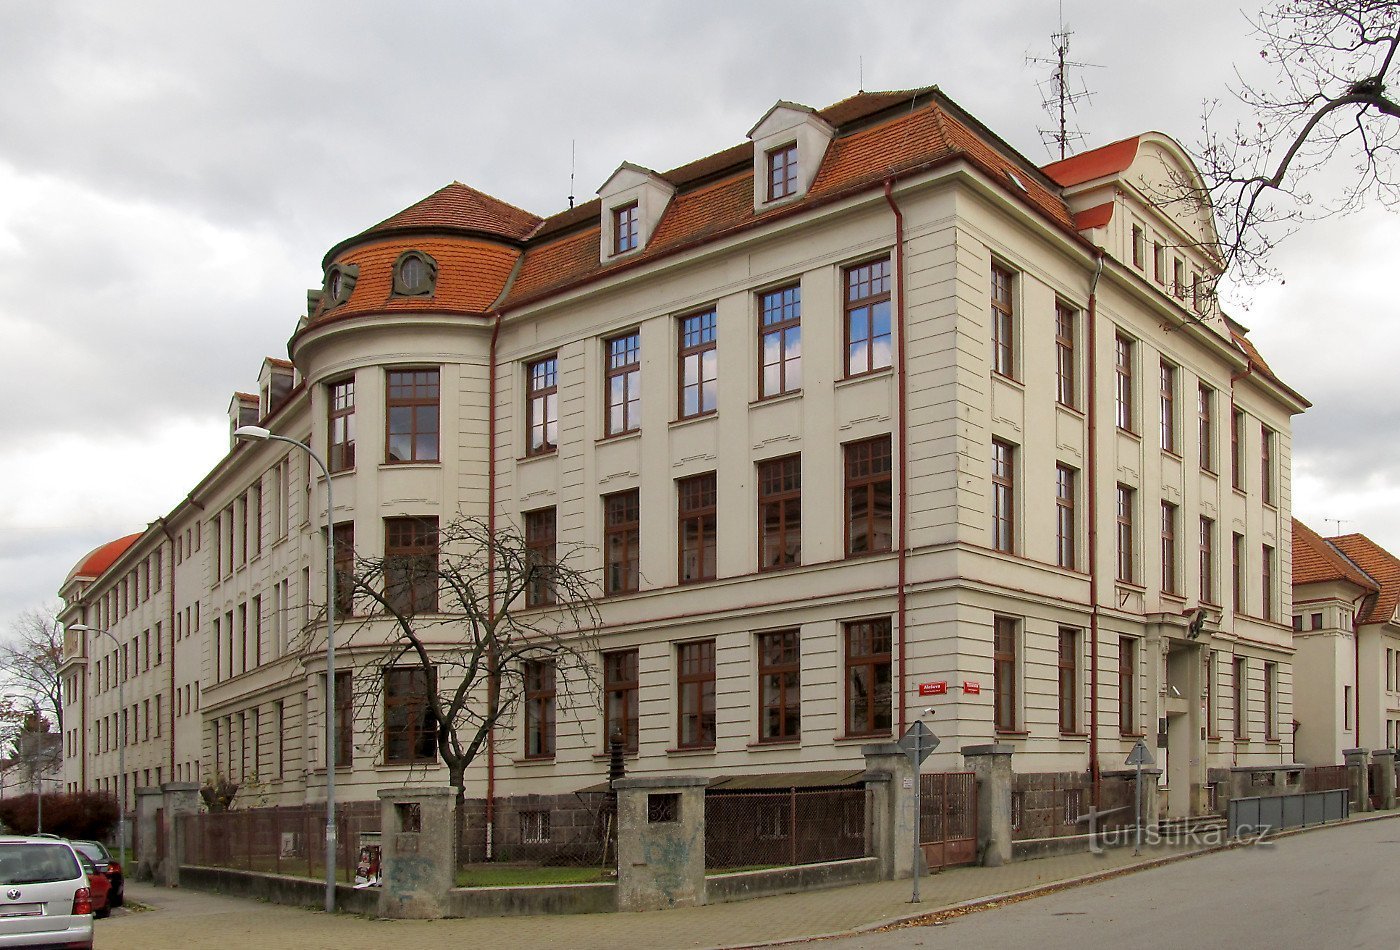 České Budějovice - Școala industrială secundară de inginerie mecanică și electrică